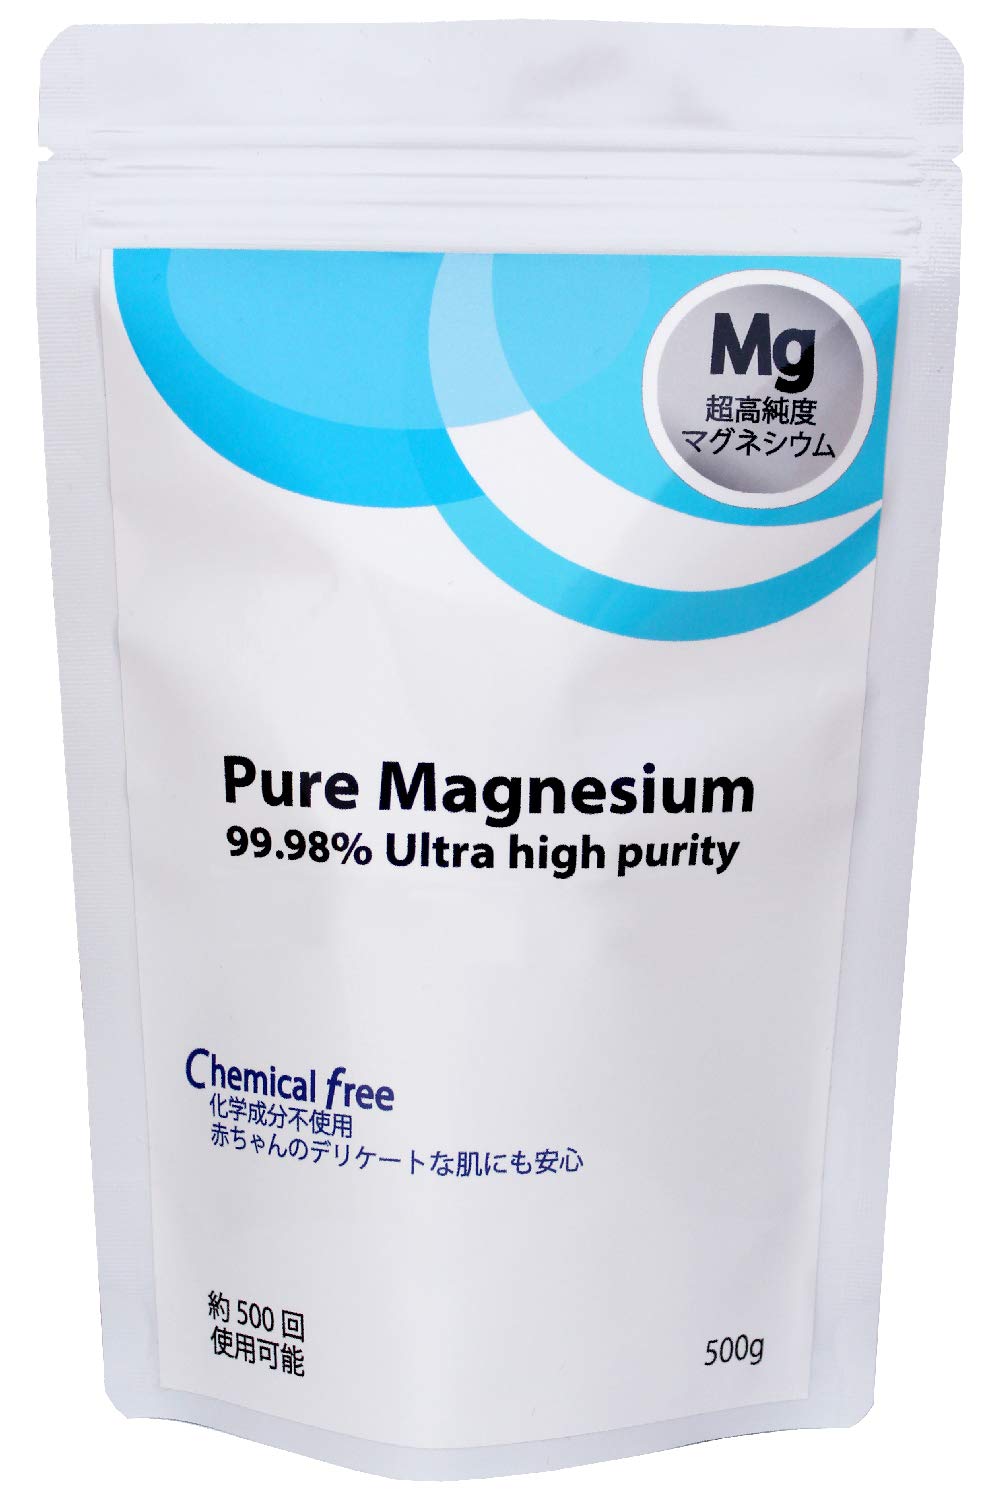 マグネシウム 入浴剤 純マグネシウム 粒 500g 超高純度 99.98% 化学成分フリー 直径6mm